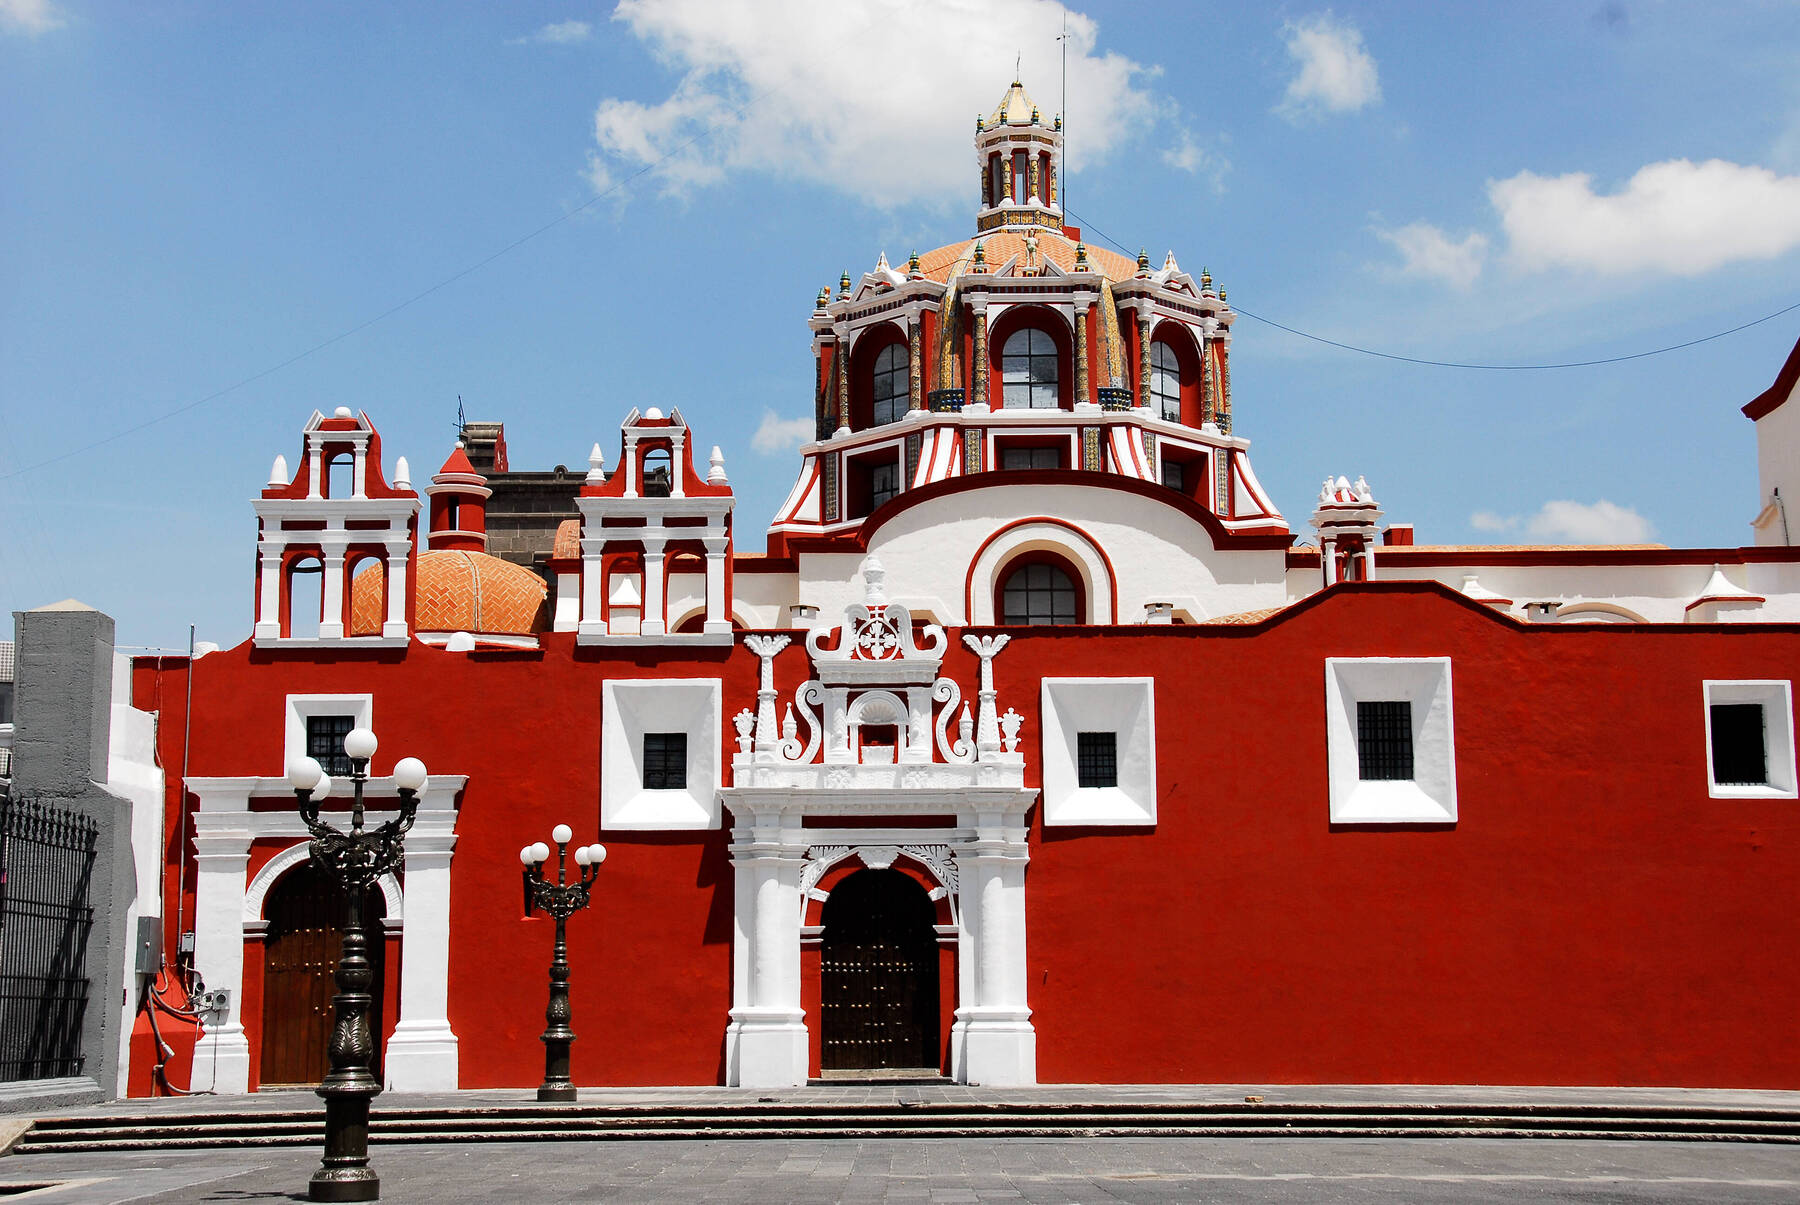 Puebla - Mexico's design destination